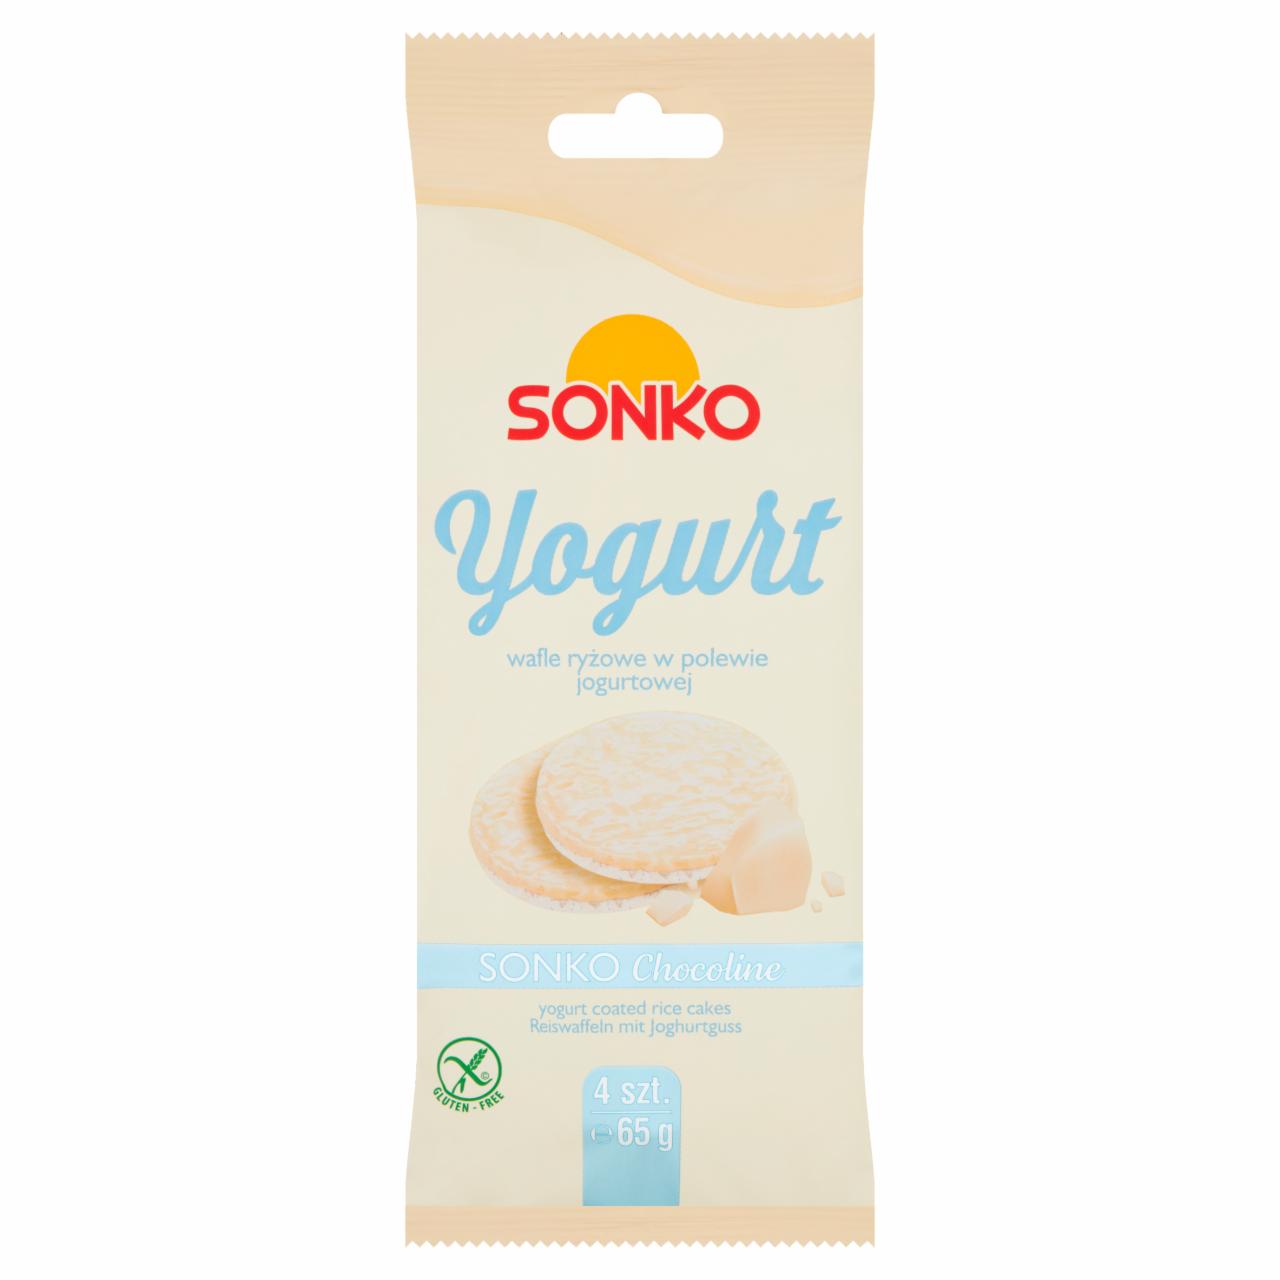 Zdjęcia - Yogurt wafle ryżowe w polewie jogurtowej Sonko